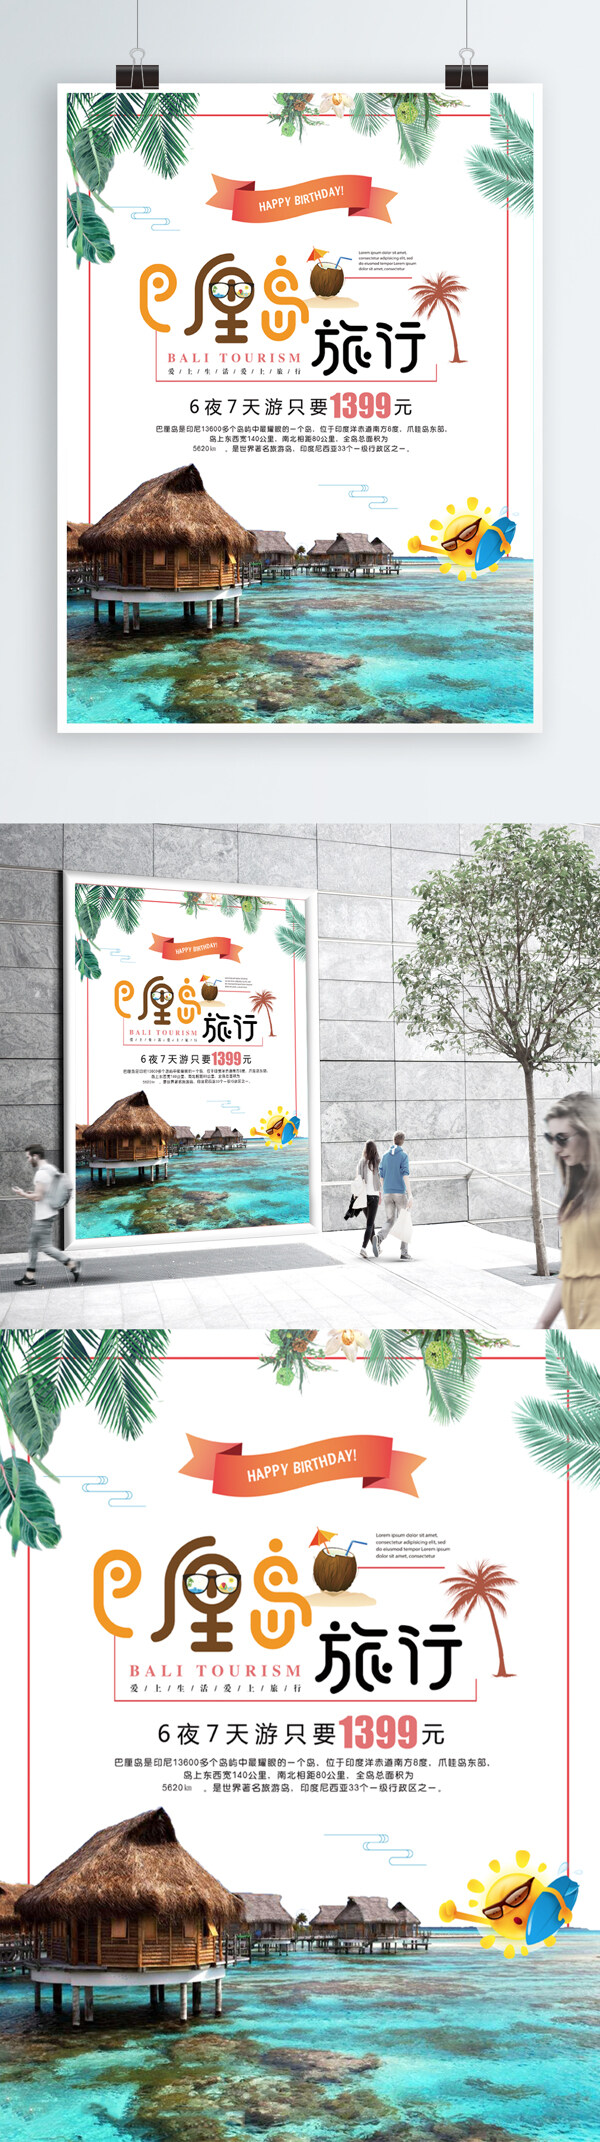 简约大气巴厘岛旅行促销海报